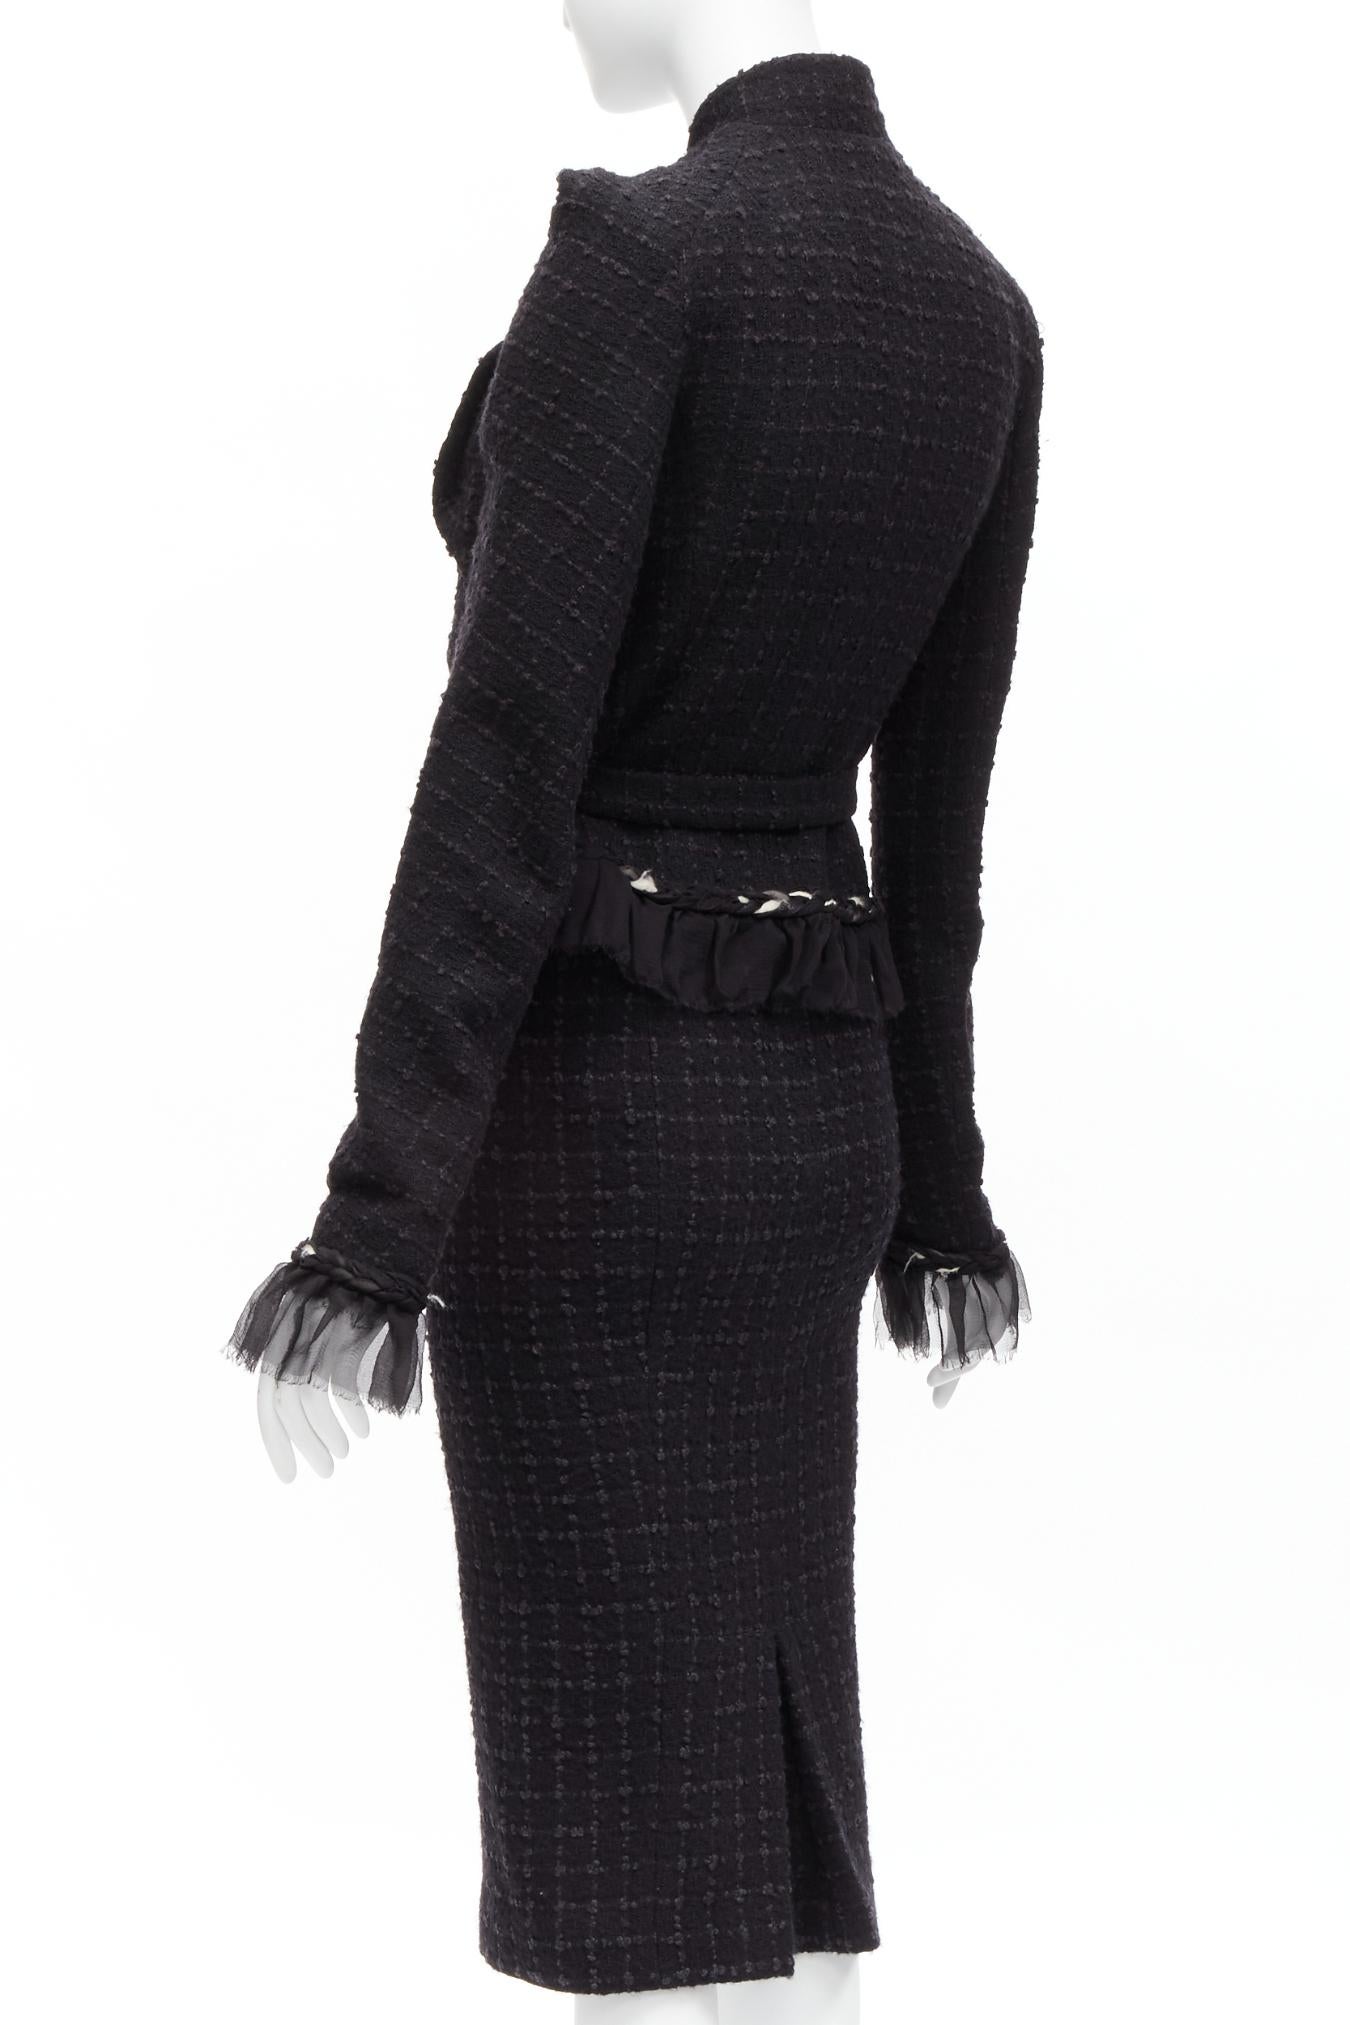 JOHN GALLIANO Vintage  wool tweed braid trim ruffle jacket skirt suit FR40 L 3